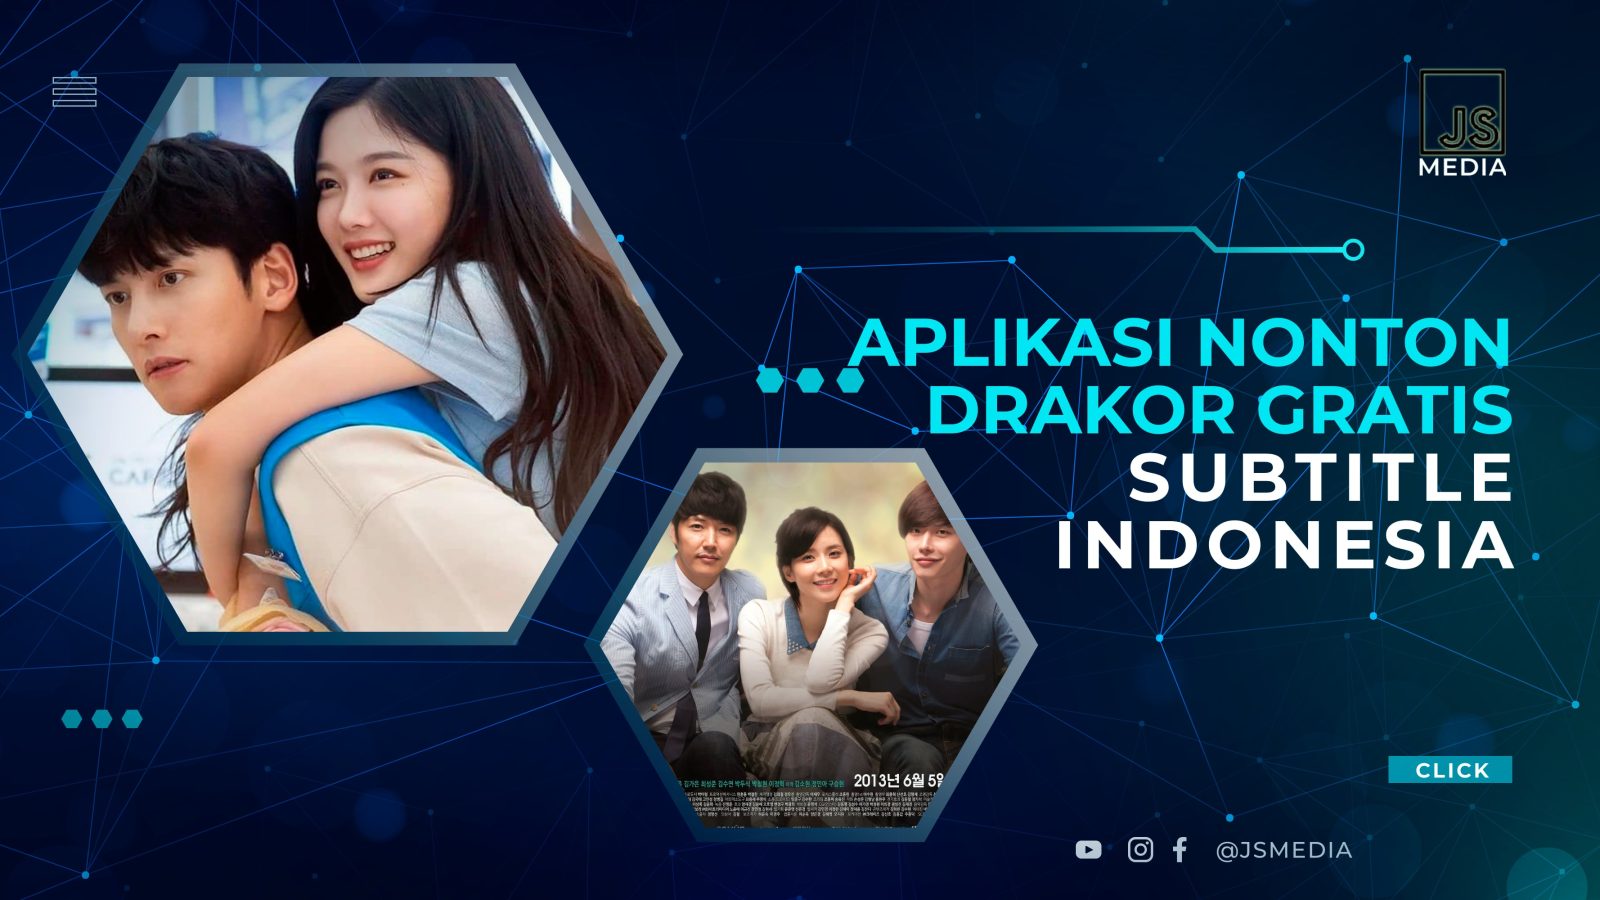 Aplikasi Nonton Drakor Gratis Subtitle Indonesia Legal